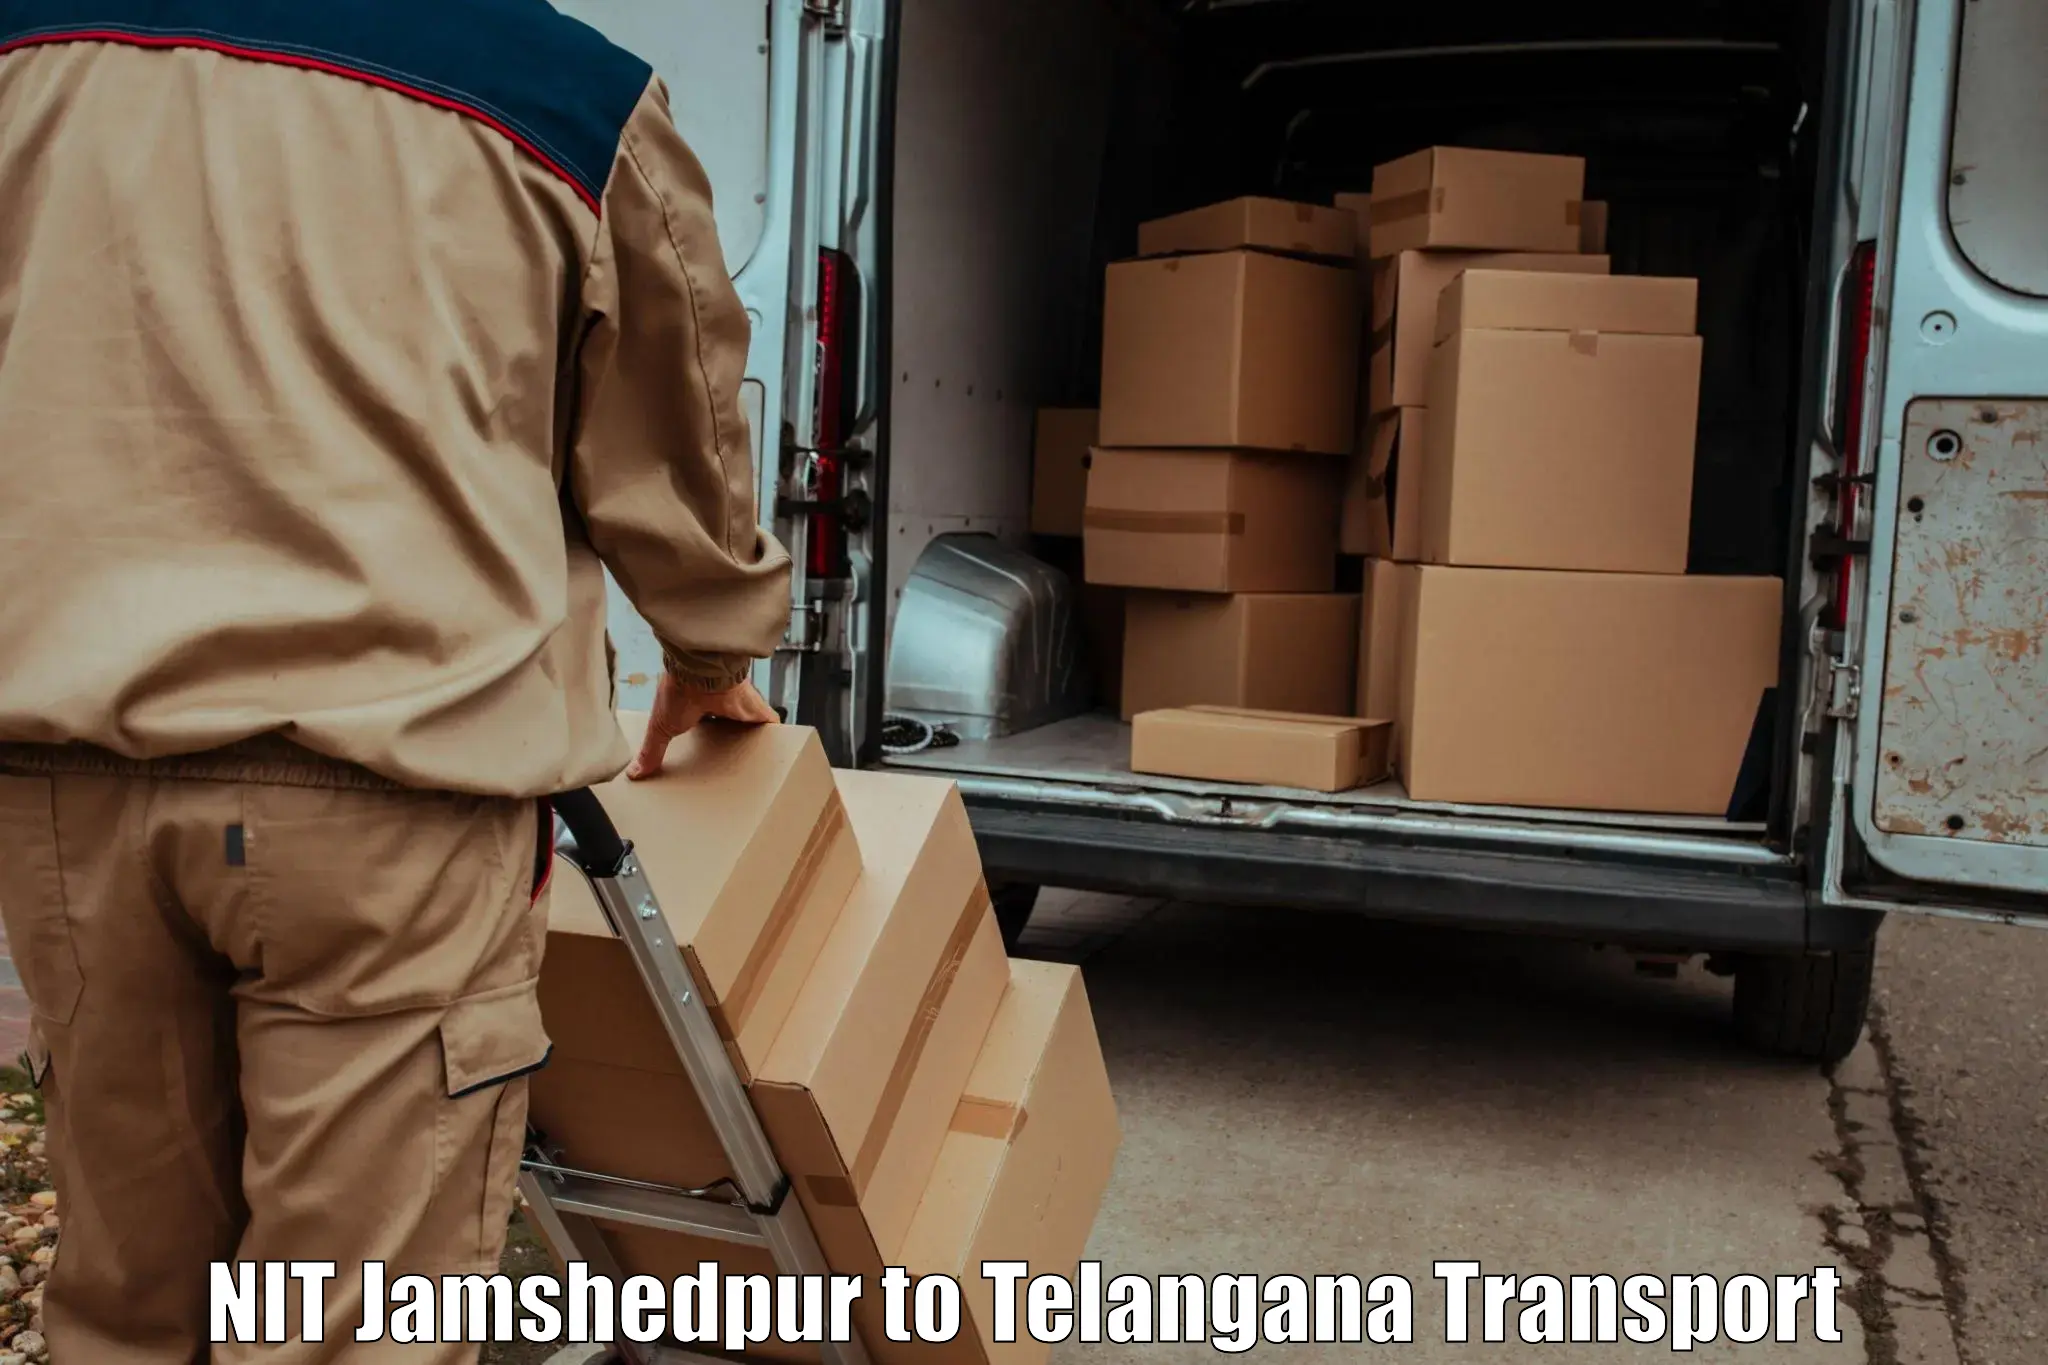 Online transport service NIT Jamshedpur to Kaghaznagar